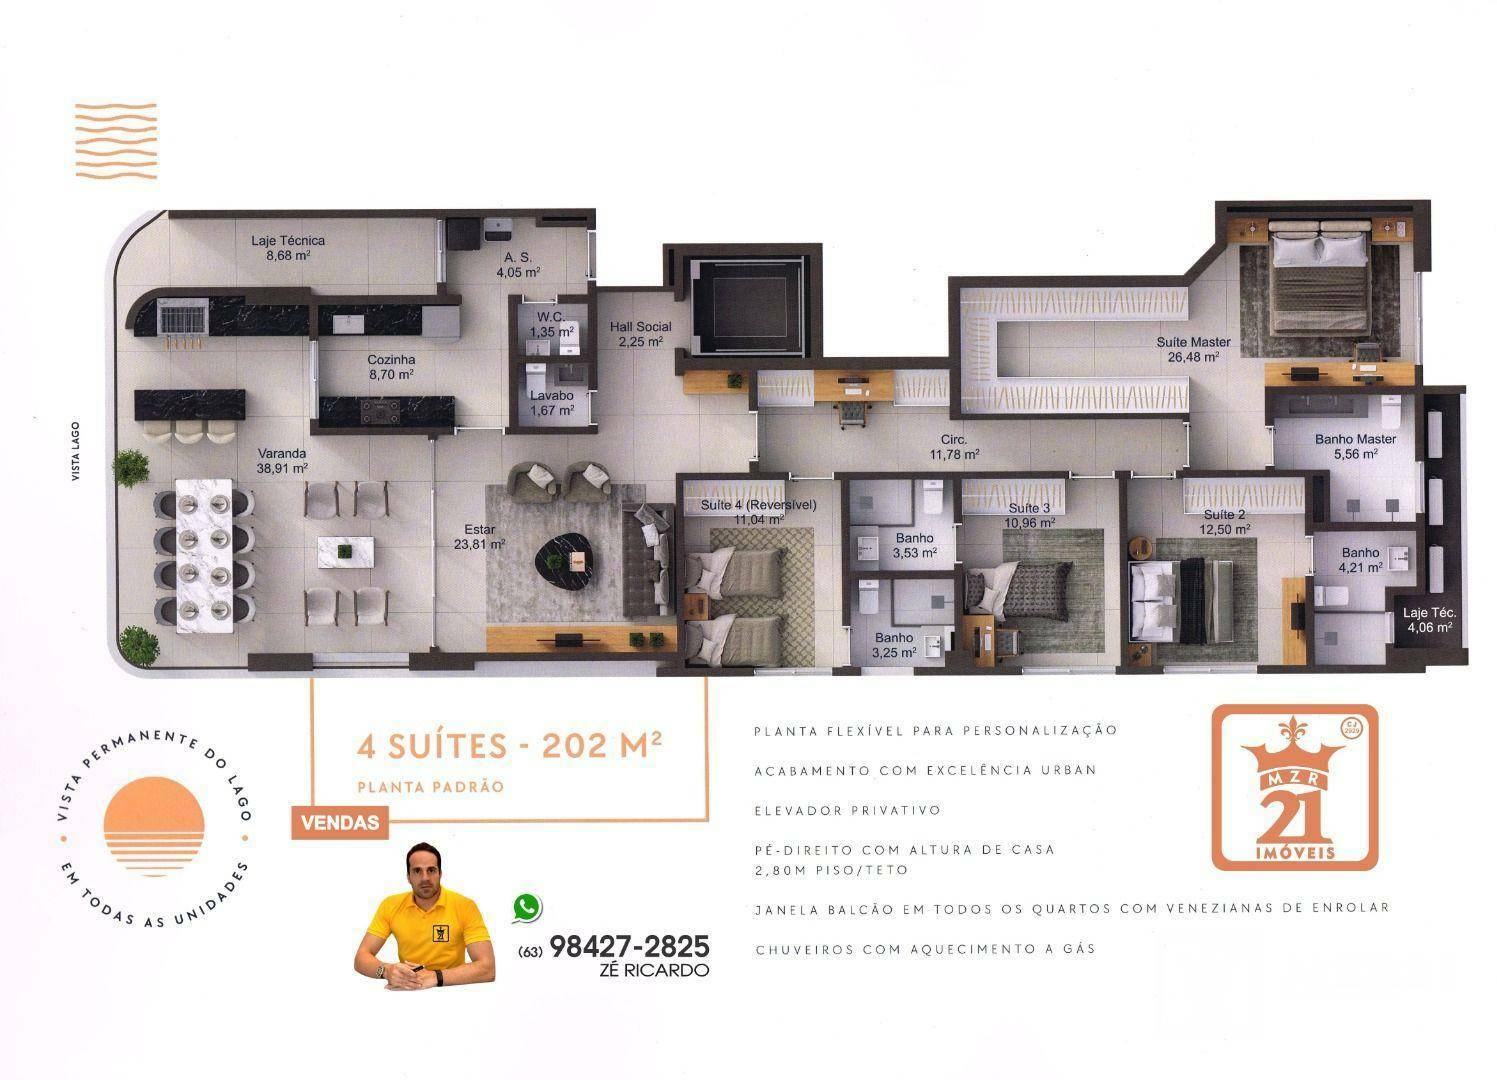 Apartamento, 4 quartos, 202 m² - Foto 4